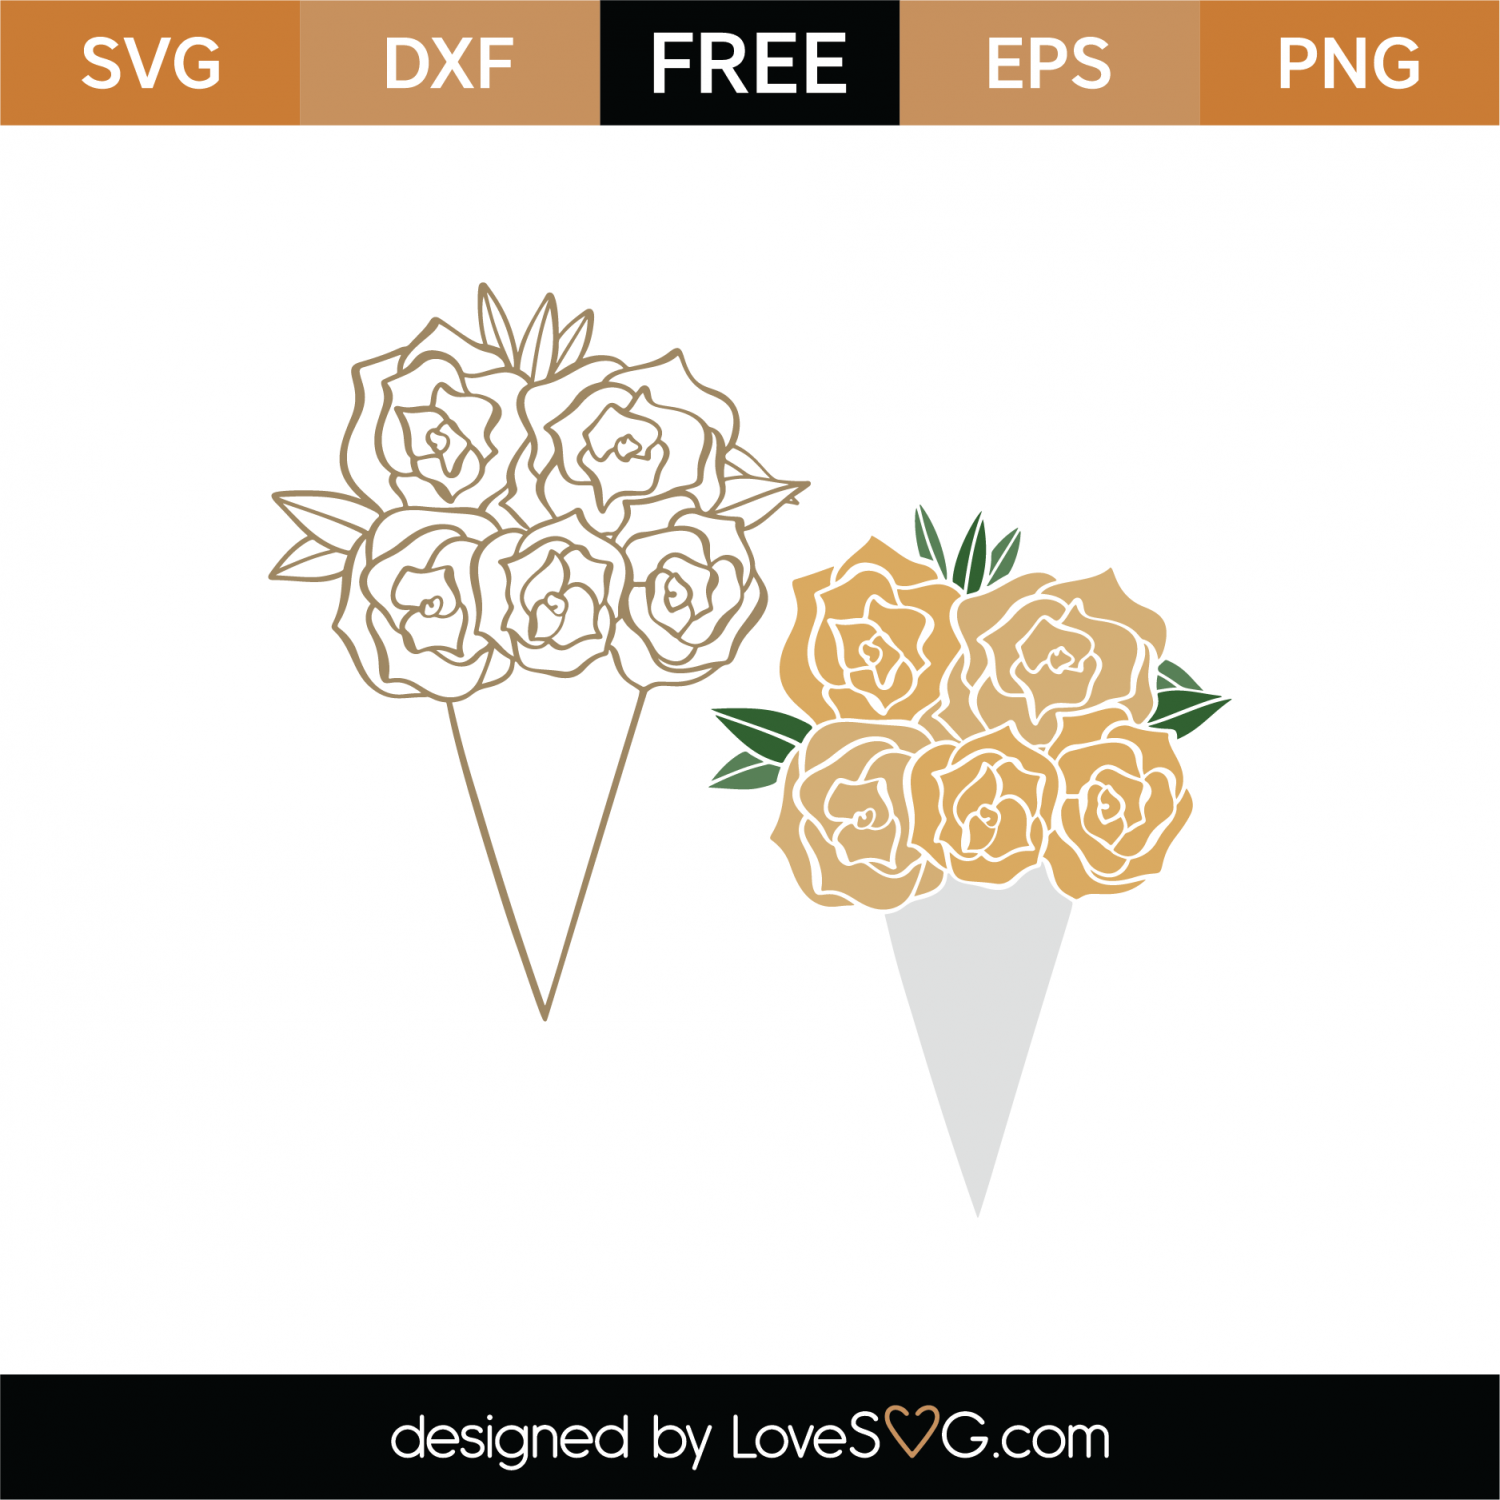 Download Free Flower Bouquet SVG Cut File | Lovesvg.com